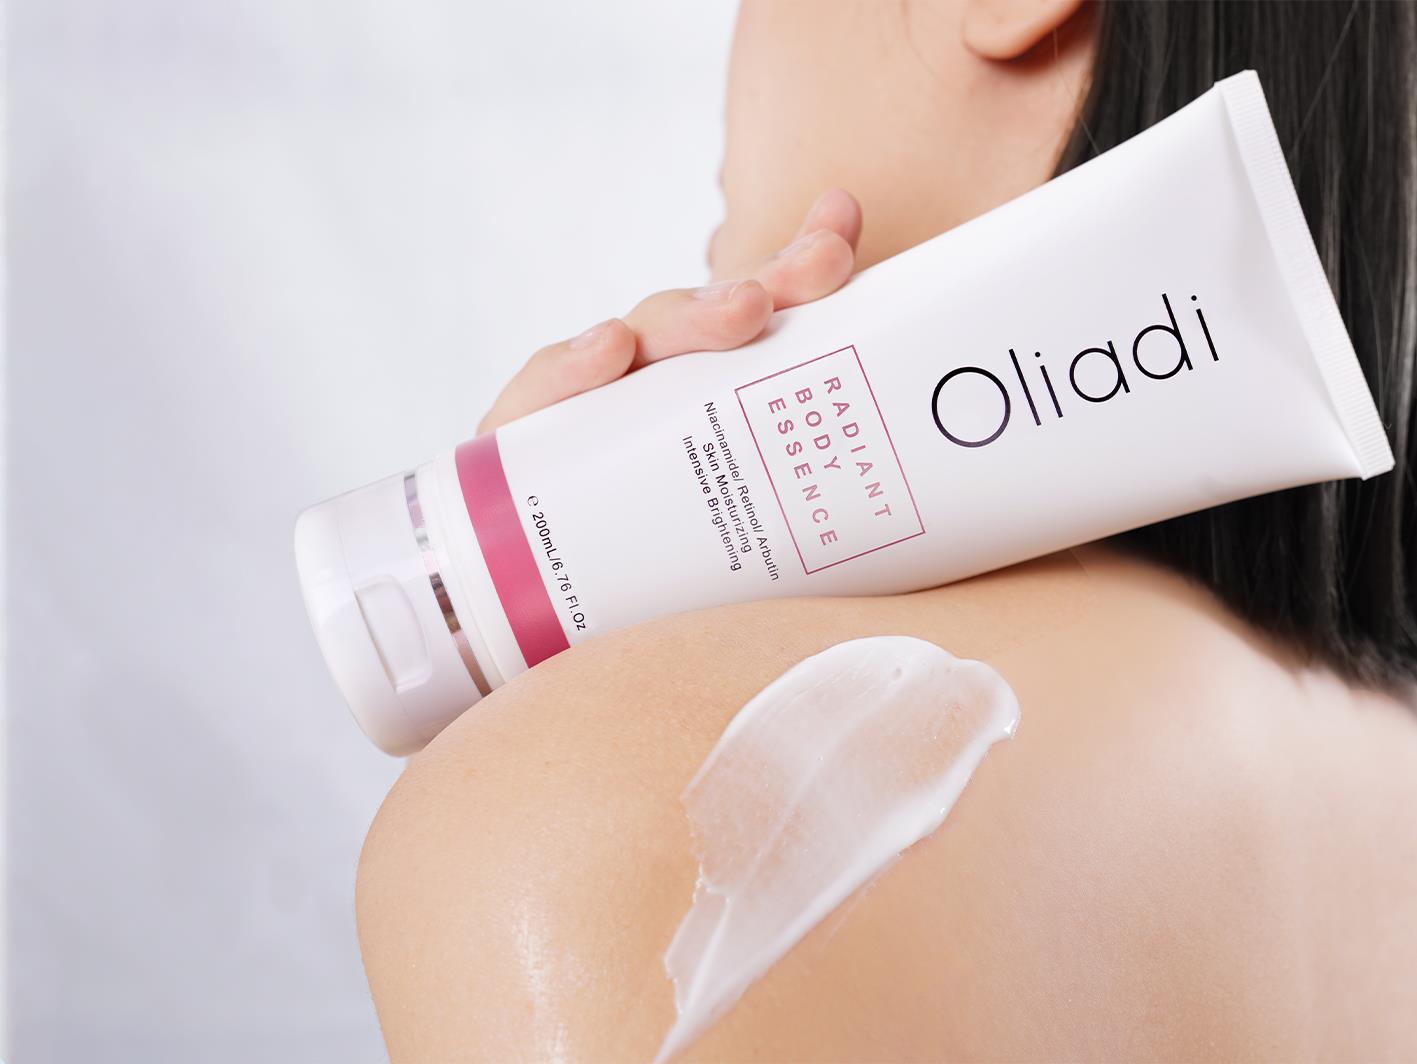 Oliadi cho ra mắt bộ sản phẩm dưỡng thể giúp khắc phục làn da “dễ bắt nắng” trong ngày hè - Ảnh 2.